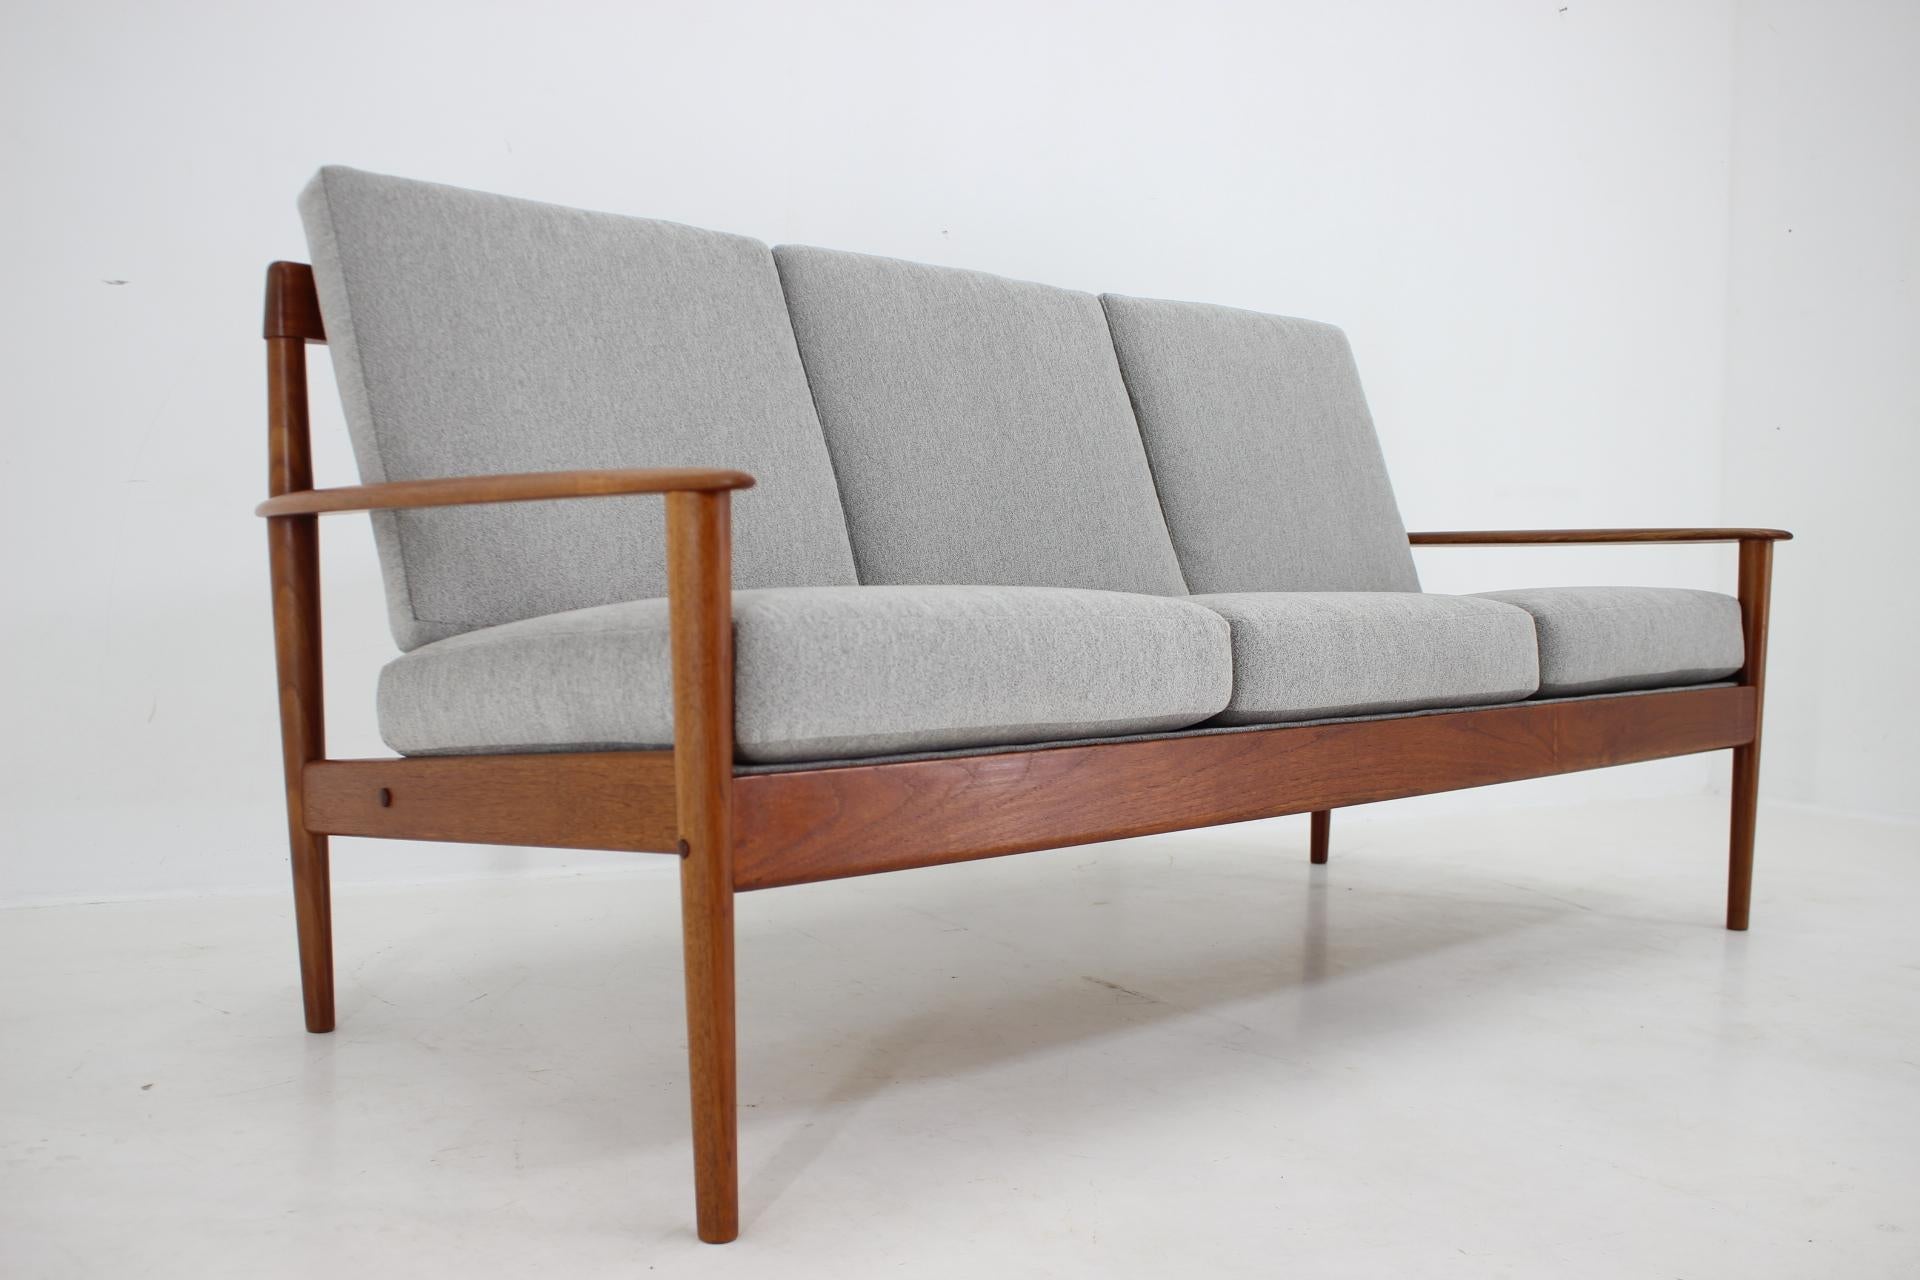 Grete Jalk, 3-Sitzer-Sofa aus Teakholz für Poul Jepessen, Dänemark, 1960er Jahre (Mitte des 20. Jahrhunderts)